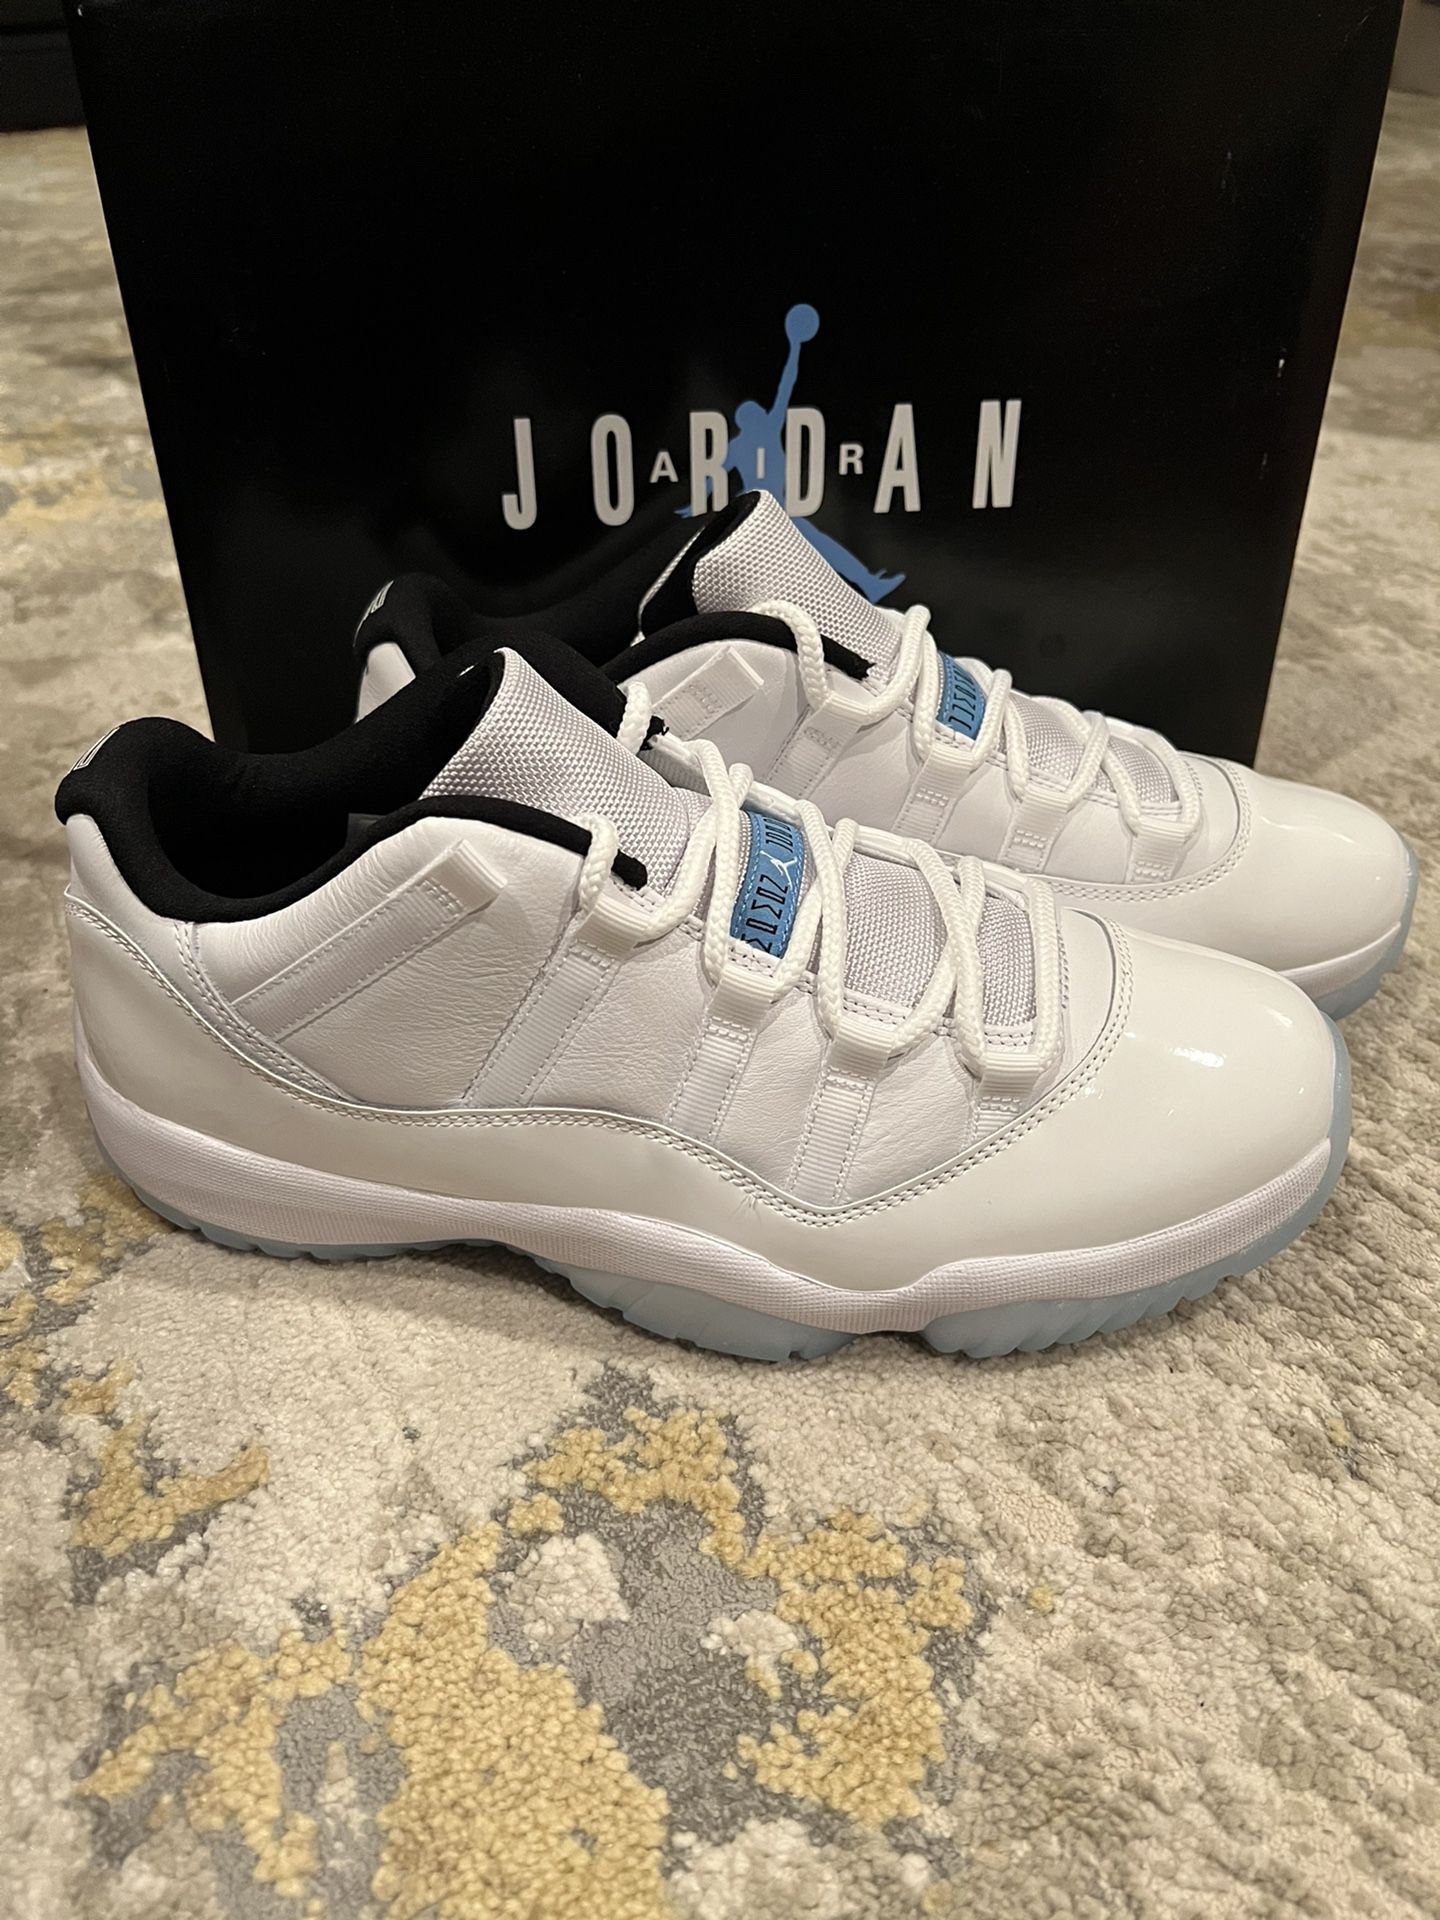 Jordan 11 Low Retro ▫️ Legend blue ▫️ Size 11